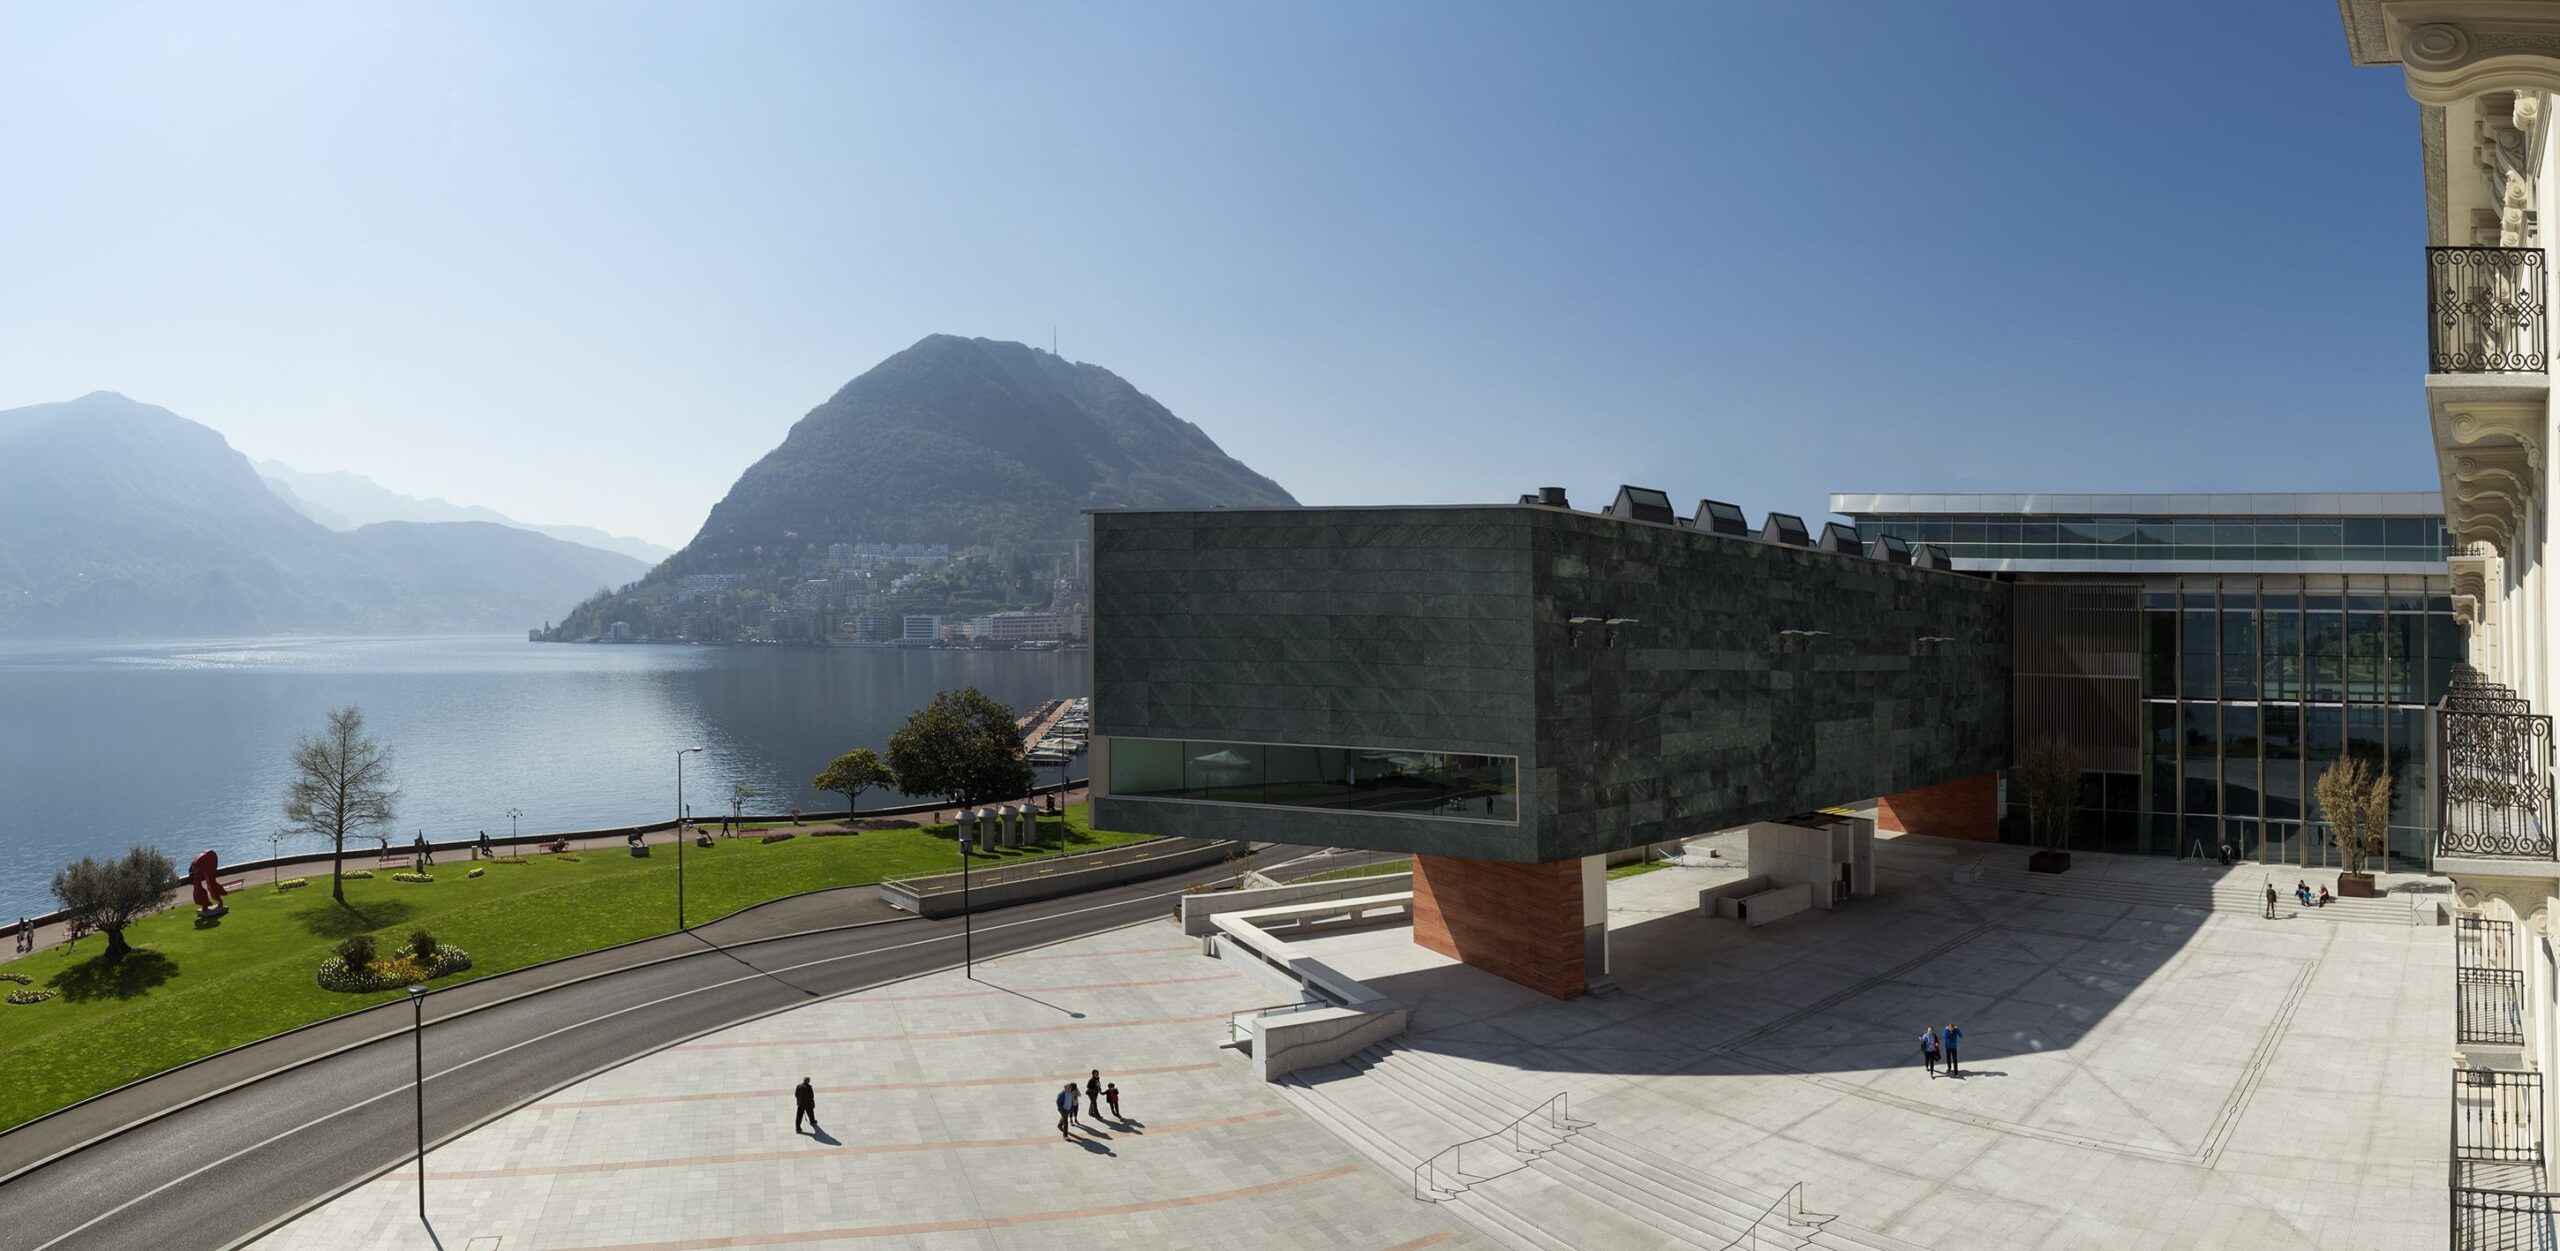 Il LAC, acronimo di Lugano, Arte e Cultura, è un centro culturale adagiato sul lac (lago in lingua francese) Ceresio (Foto: Studio Pagi)